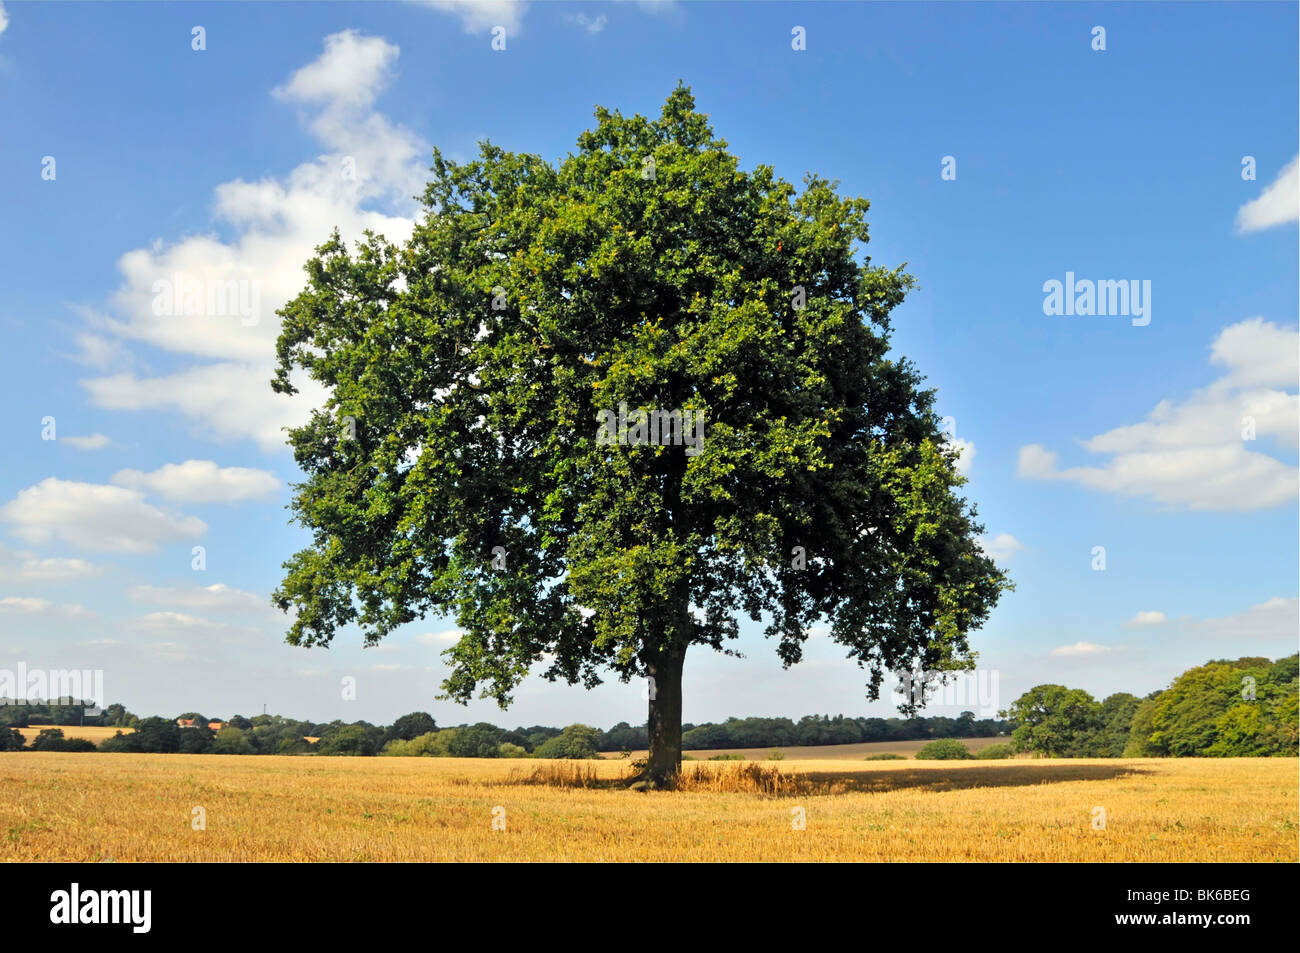 Spécimen classique Oak Tree forme se tient seul dans le champ agricole de chaume rural près de Brentwood Essex campagne bleu ciel jour d'été paysage Angleterre Royaume-Uni Banque D'Images